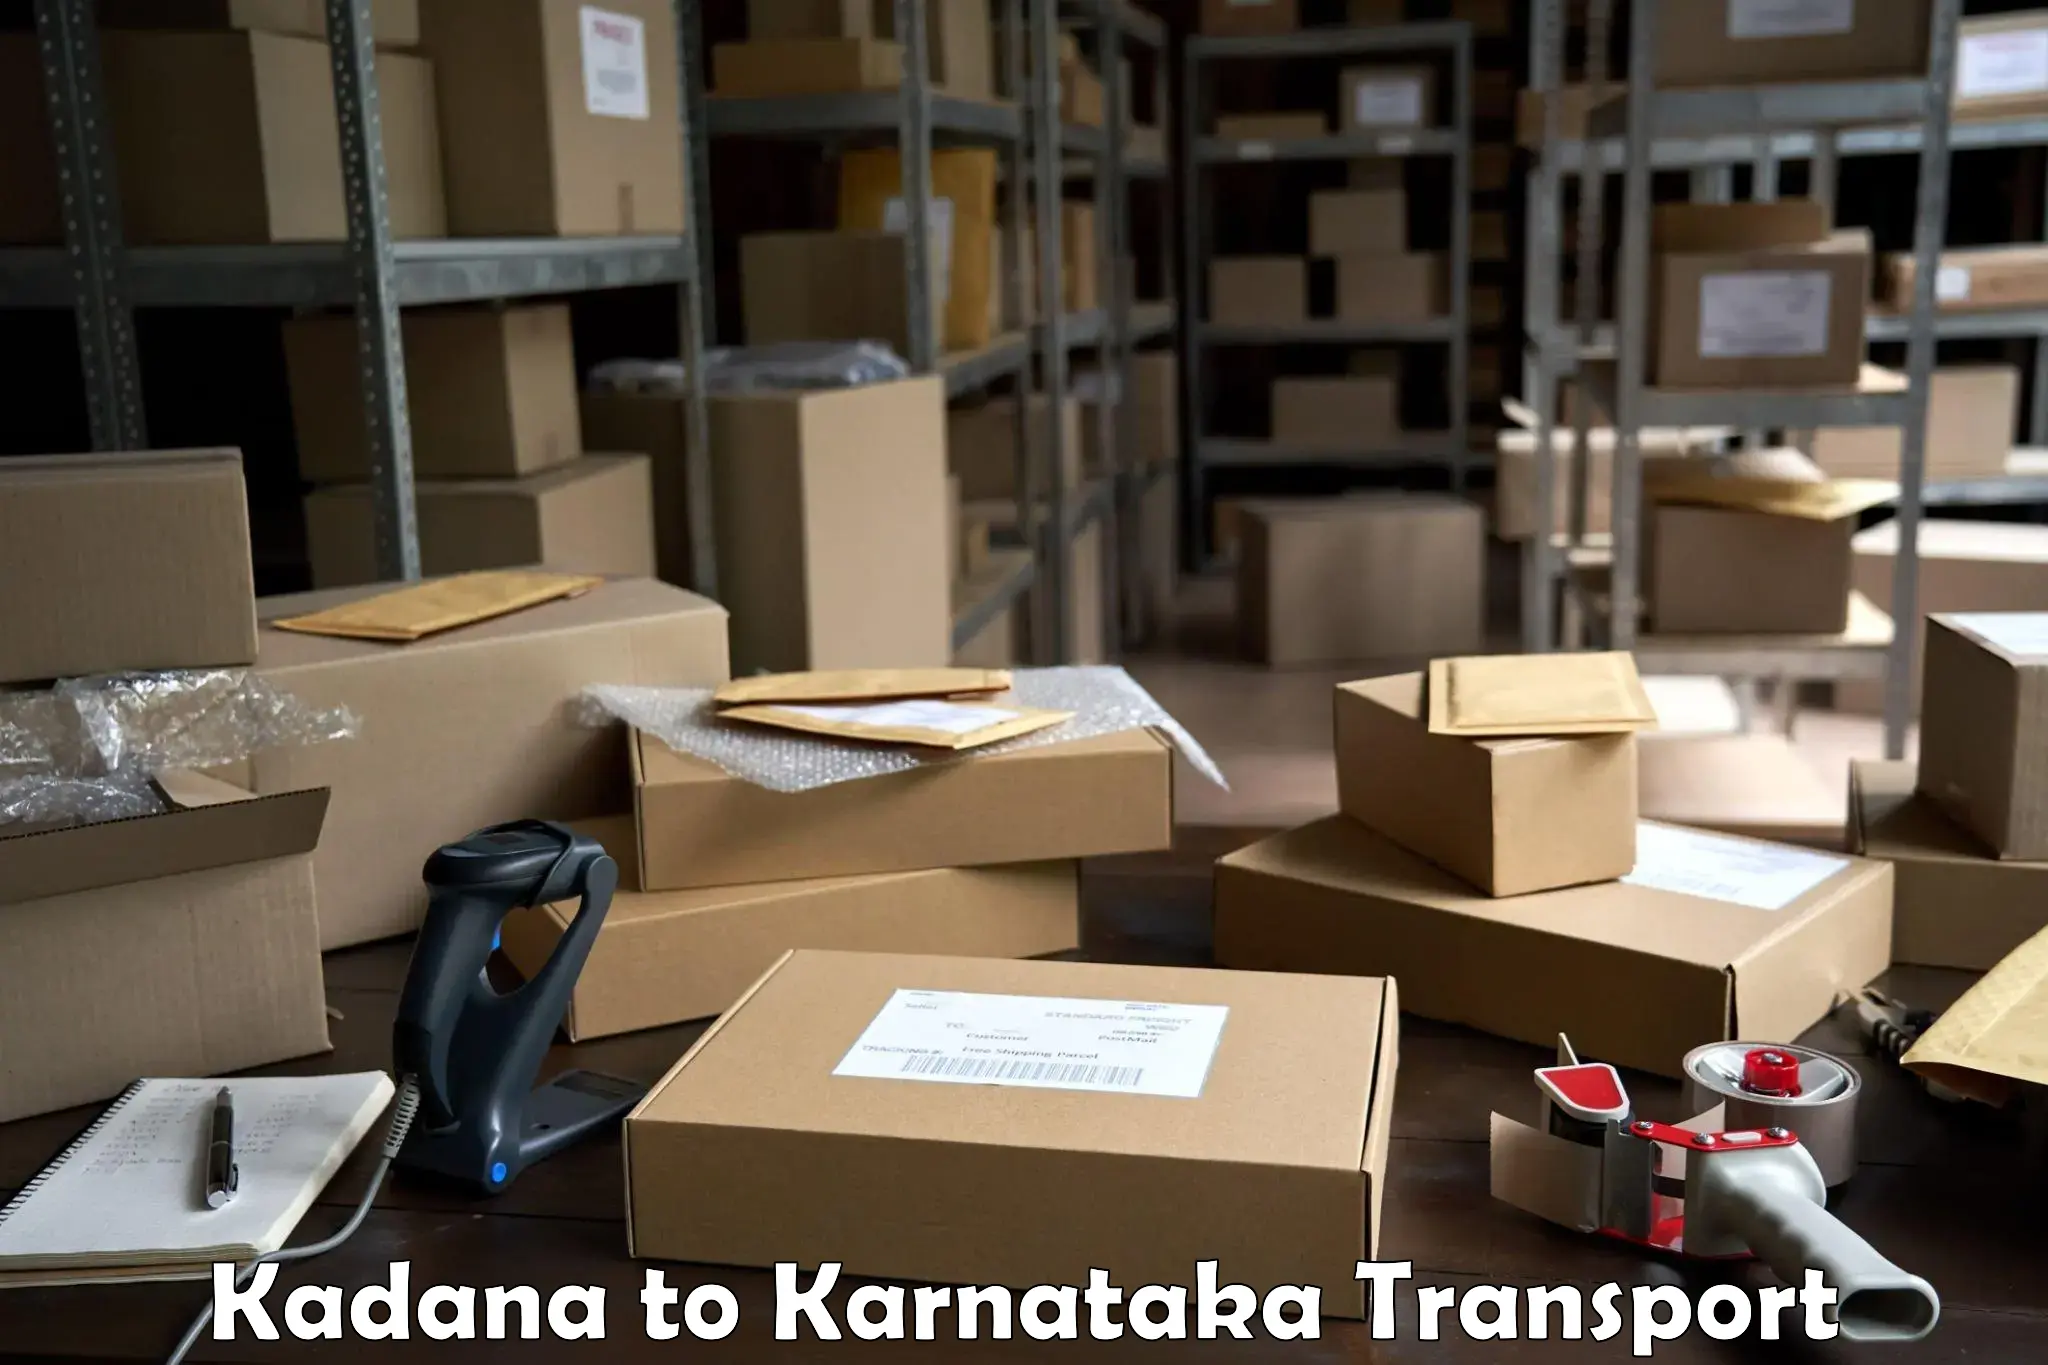 Shipping partner Kadana to Mysore